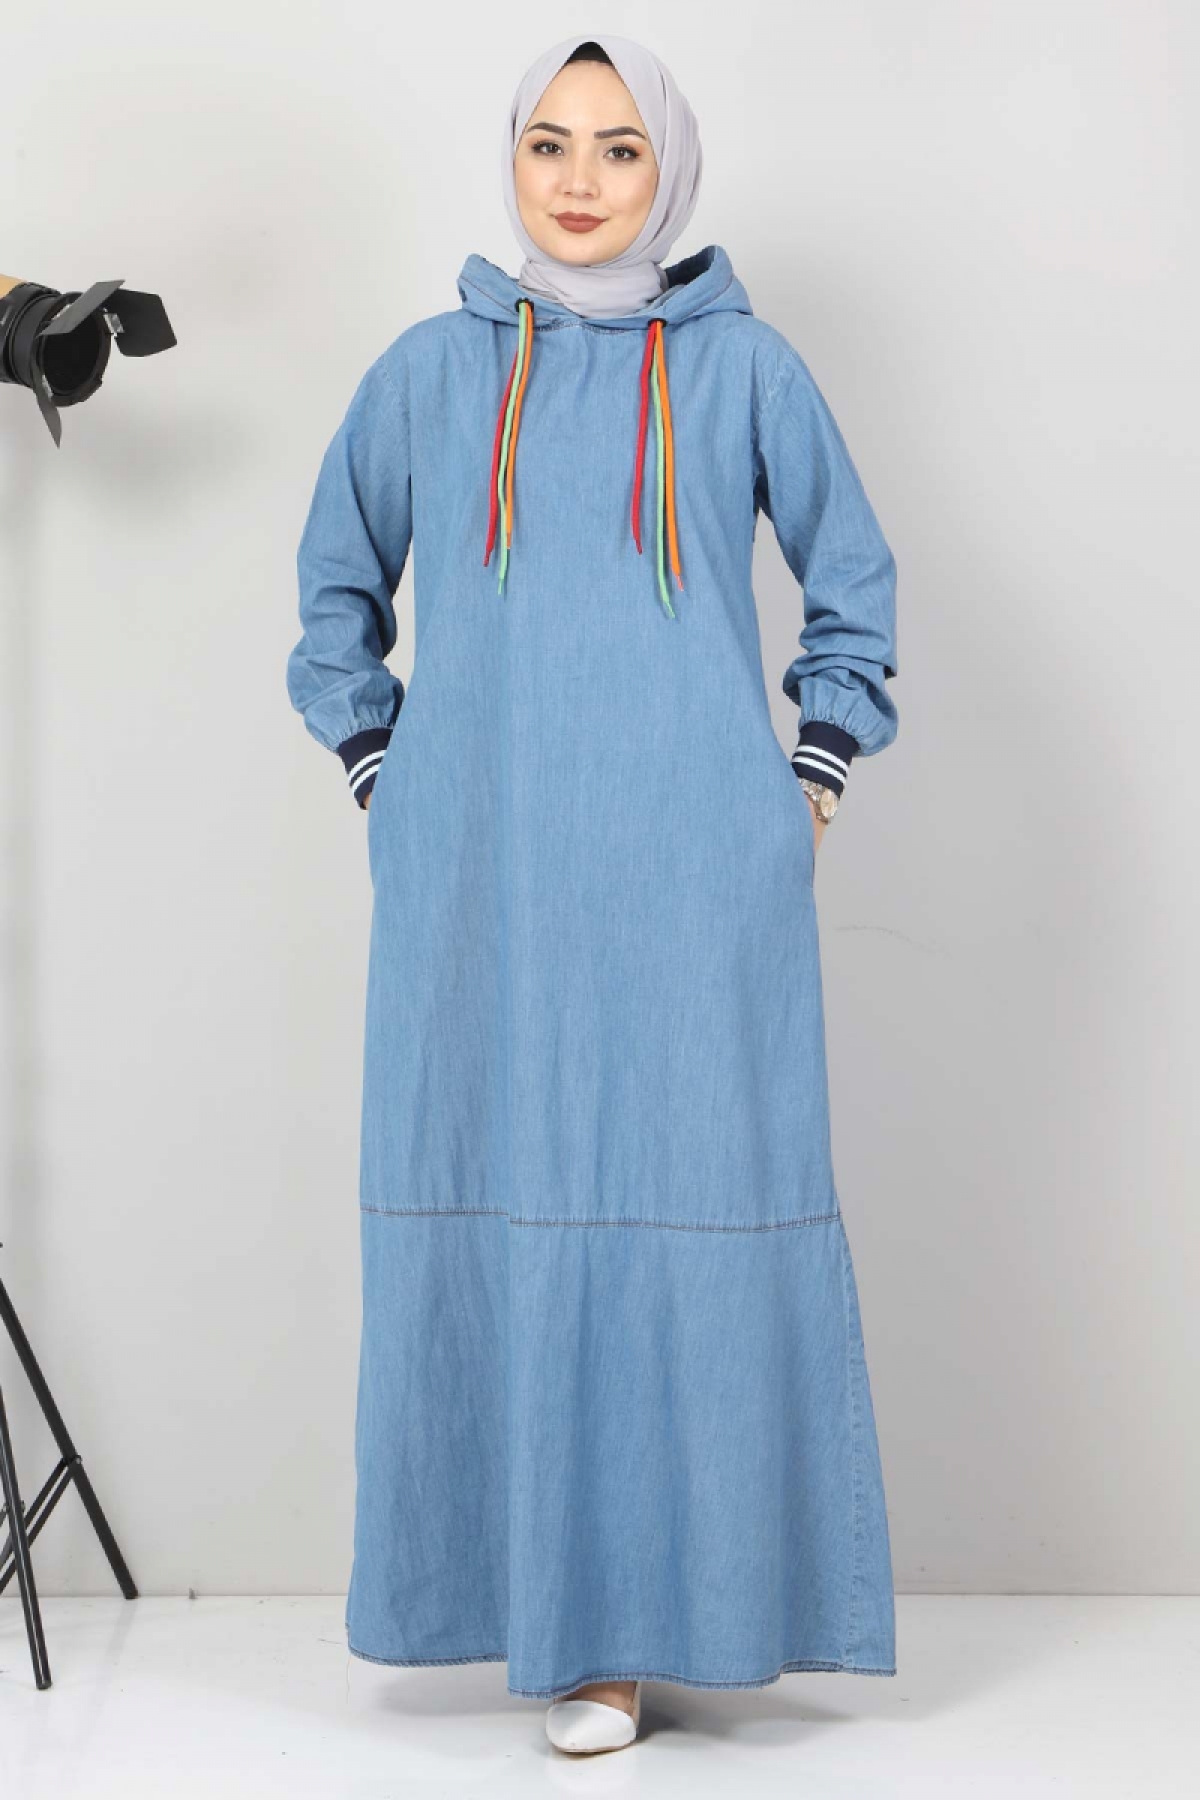 Tesettür Dünyası - Bağcık Detaylı Kapşonlu Kot Elbise TSD1431 Açık Mavi